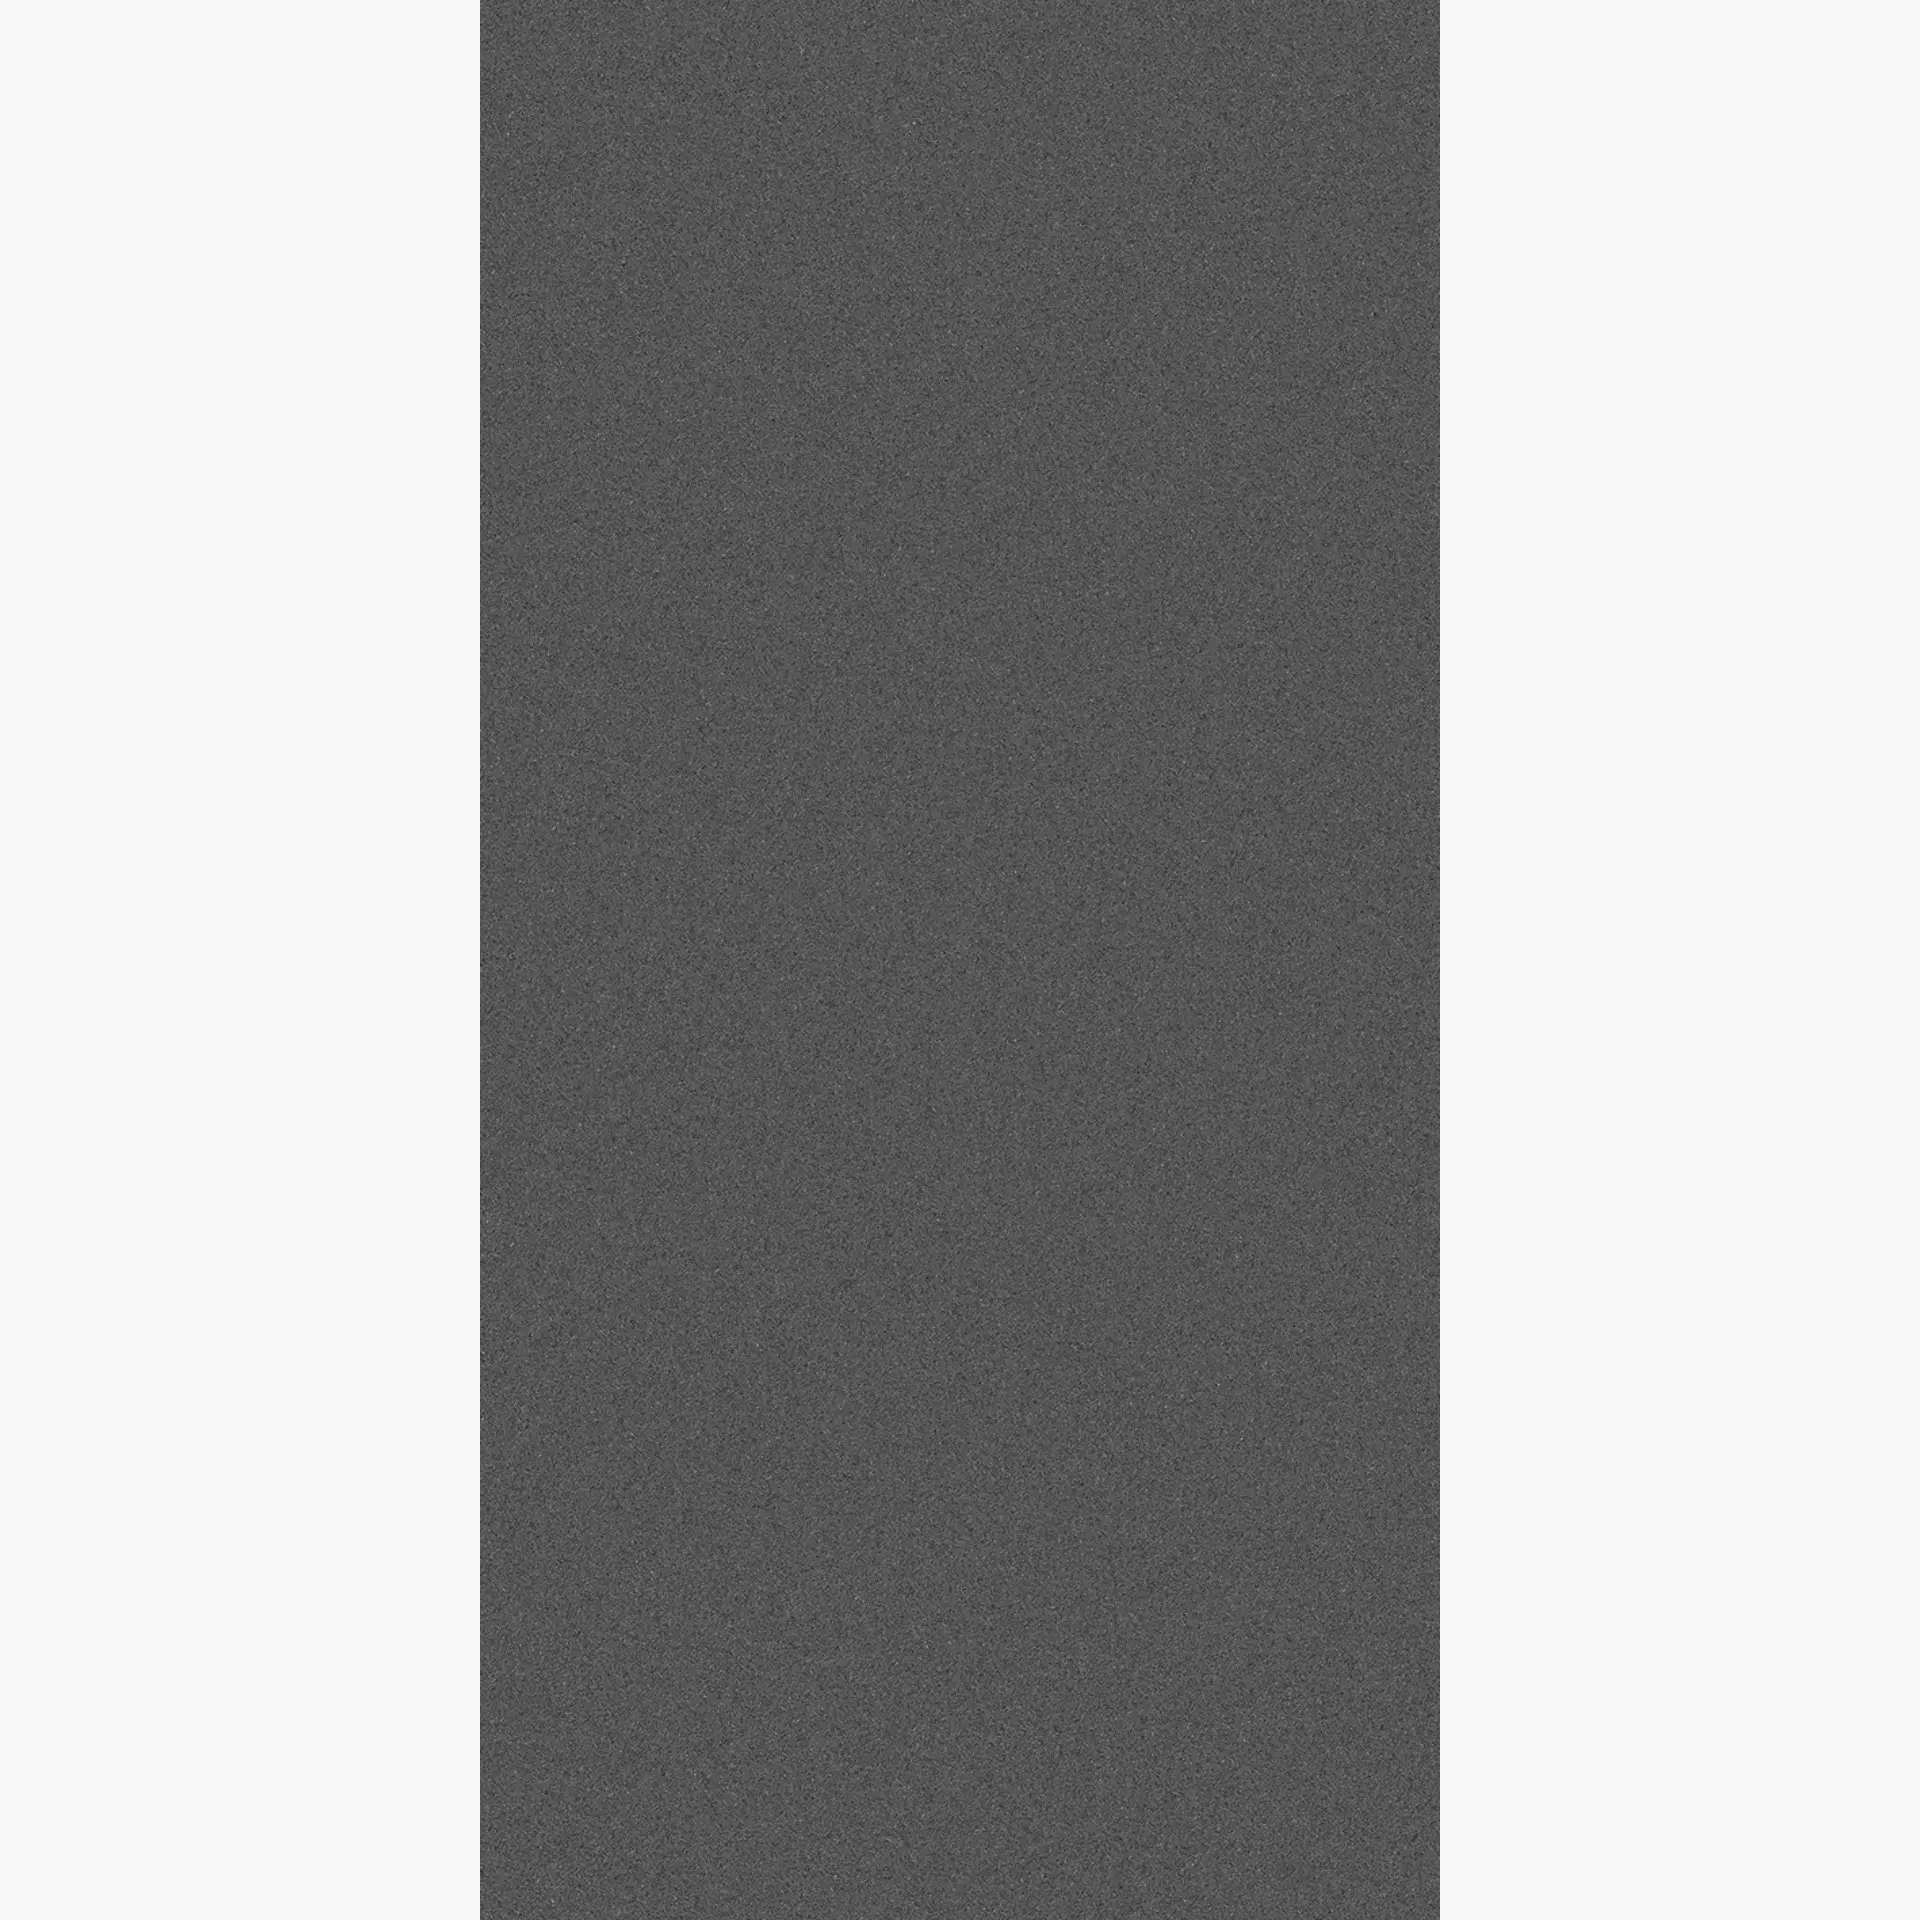 Wandfliese,Bodenfliese Villeroy & Boch Pure Line 2.0 Asphalt Grey Matt Asphalt Grey 2751-UL90 matt 60x120cm rektifiziert 12mm